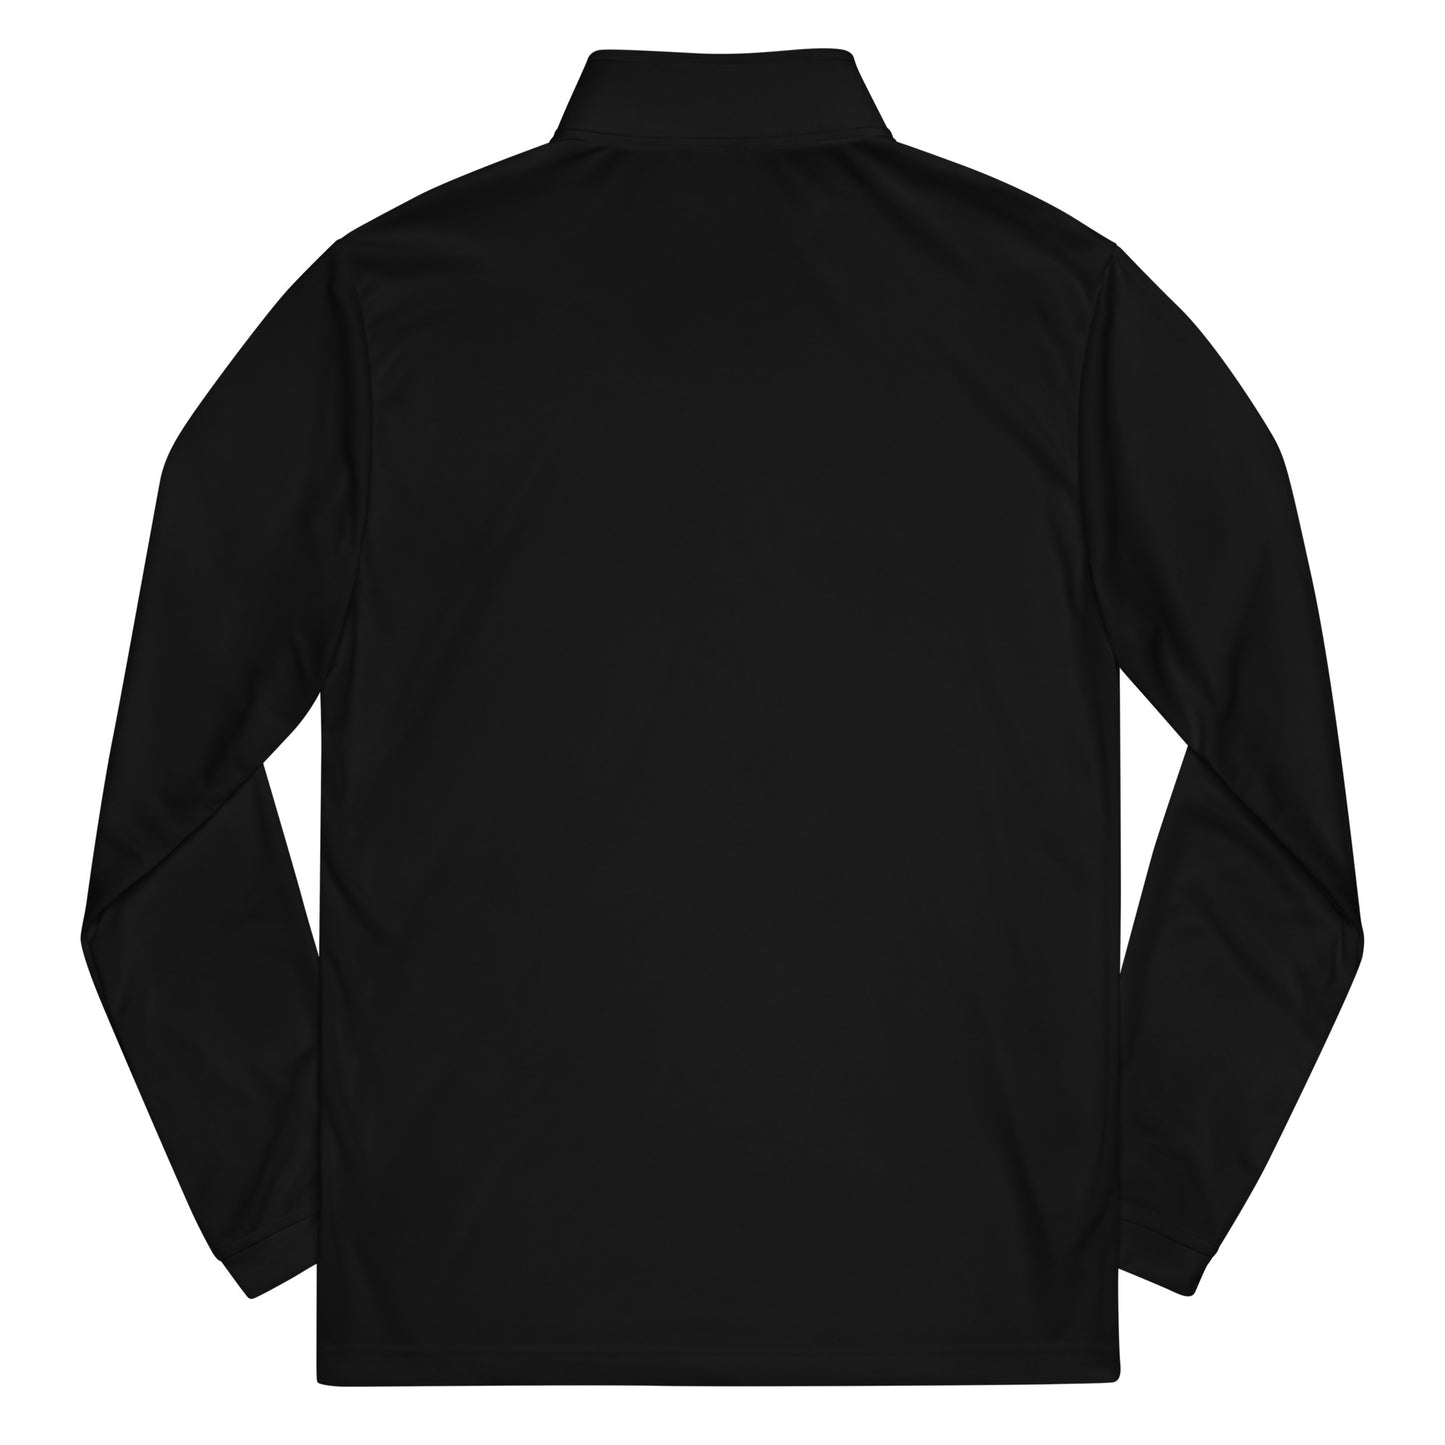 ADIDAS_BLOCK S_LOGO-Quarter zip pullover